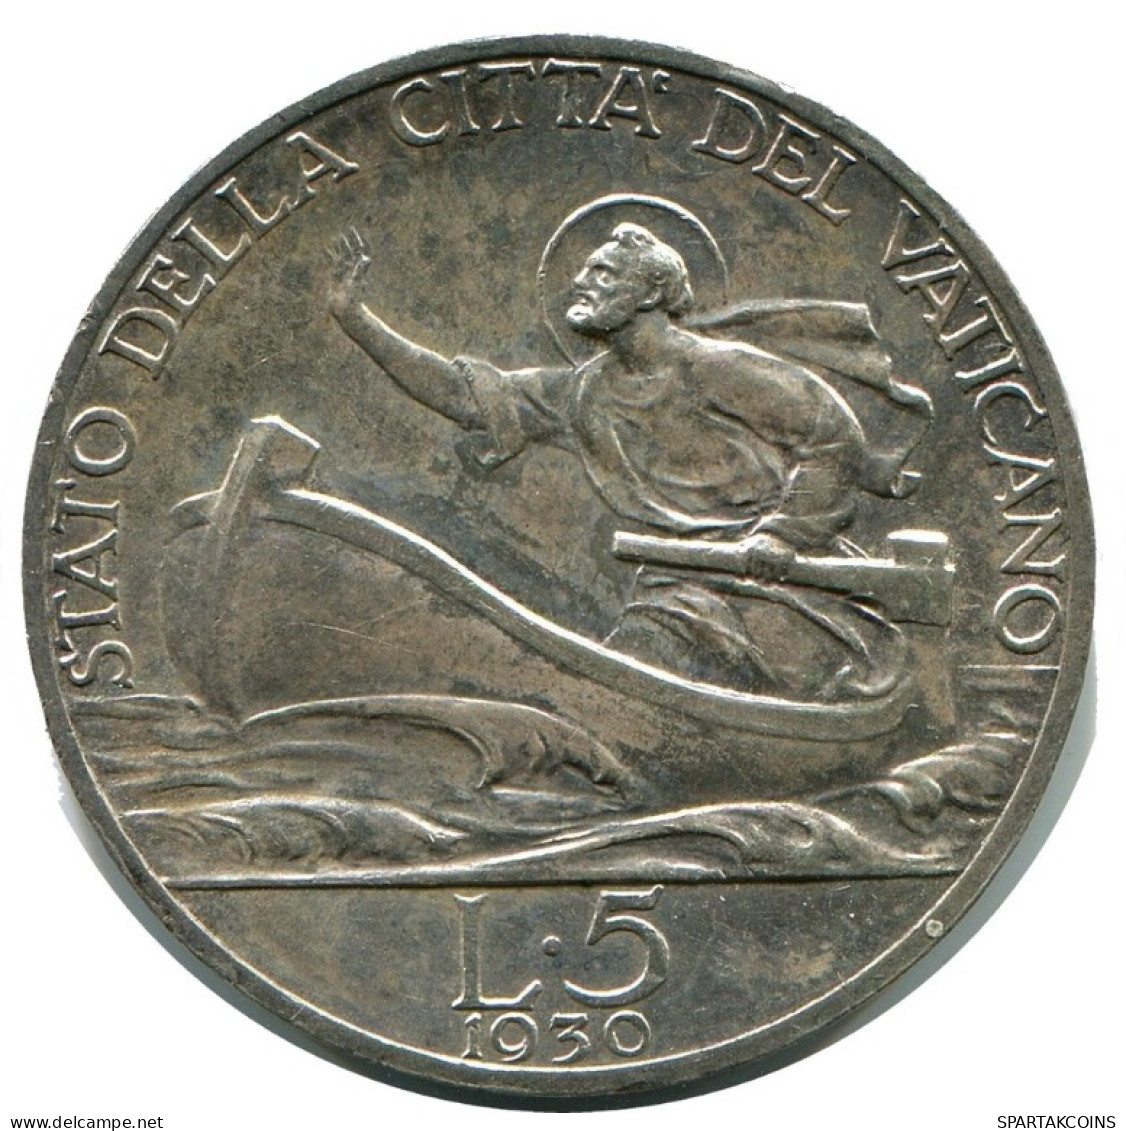 5 LIRE 1930 VATIKAN VATICAN Münze Pius XI (1922-1939) SILBER #AH364.13.D.A - Vatikan